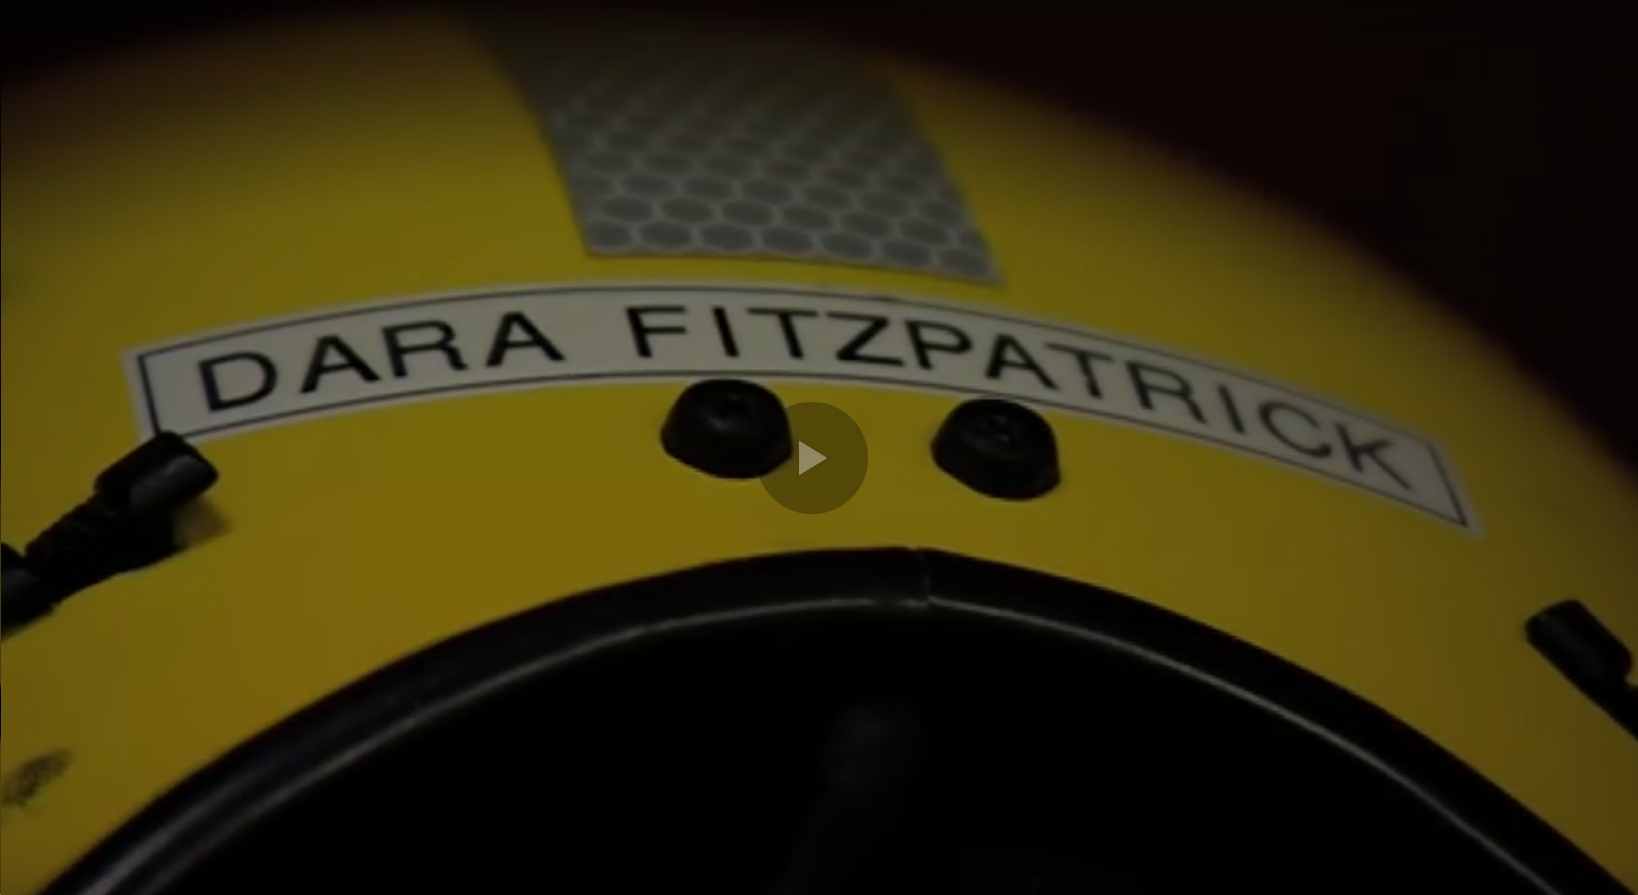 La valiente piloto de helicóptero Dara Fitzpatrick es sepultada en Dublín